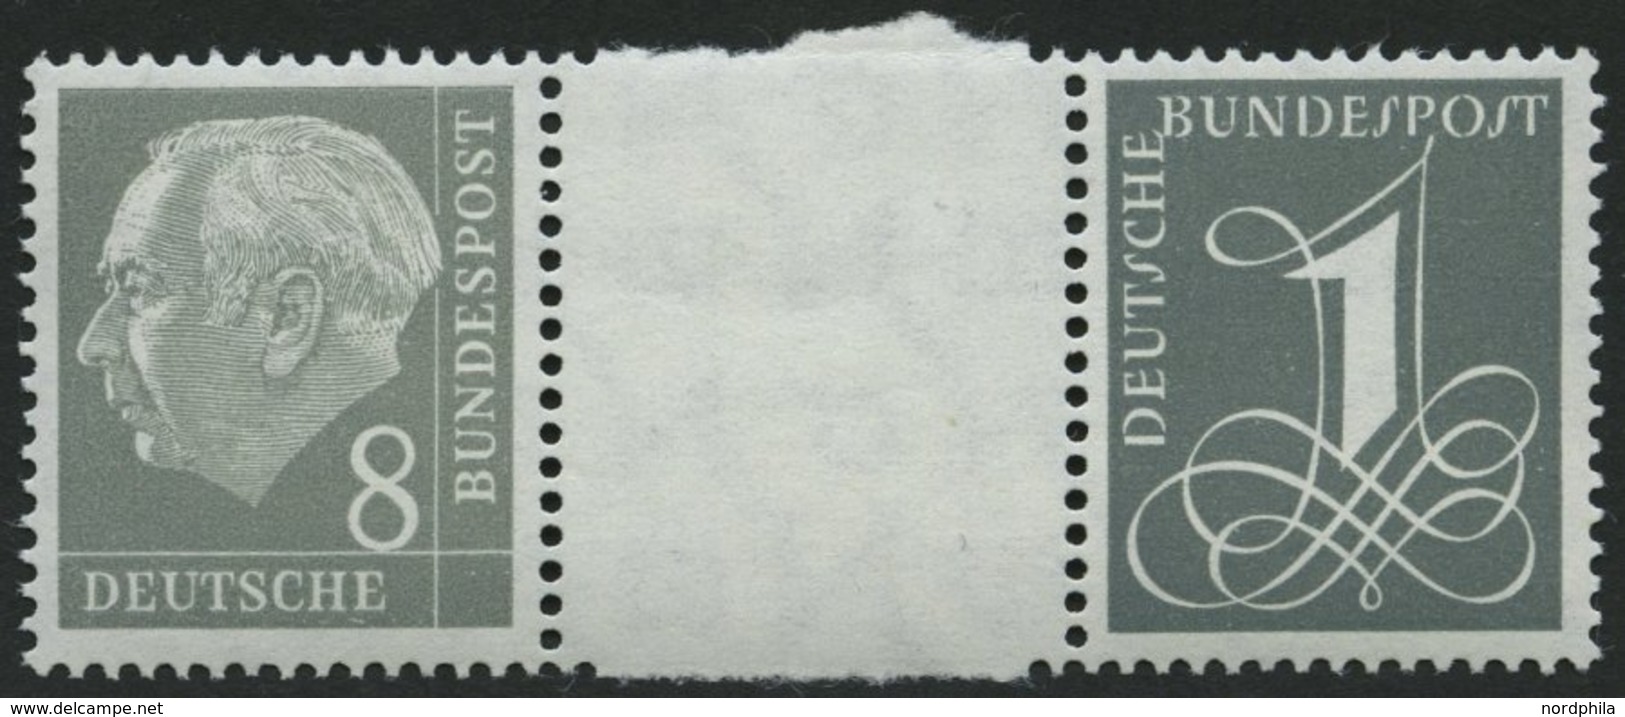 ZUSAMMENDRUCKE WZ 15bYII **, 1960, Heuß Wz. Liegend 8 + Z + 1, Ohne Strichelleisten, Nachauflage, Pracht, Mi. 90.- - Used Stamps